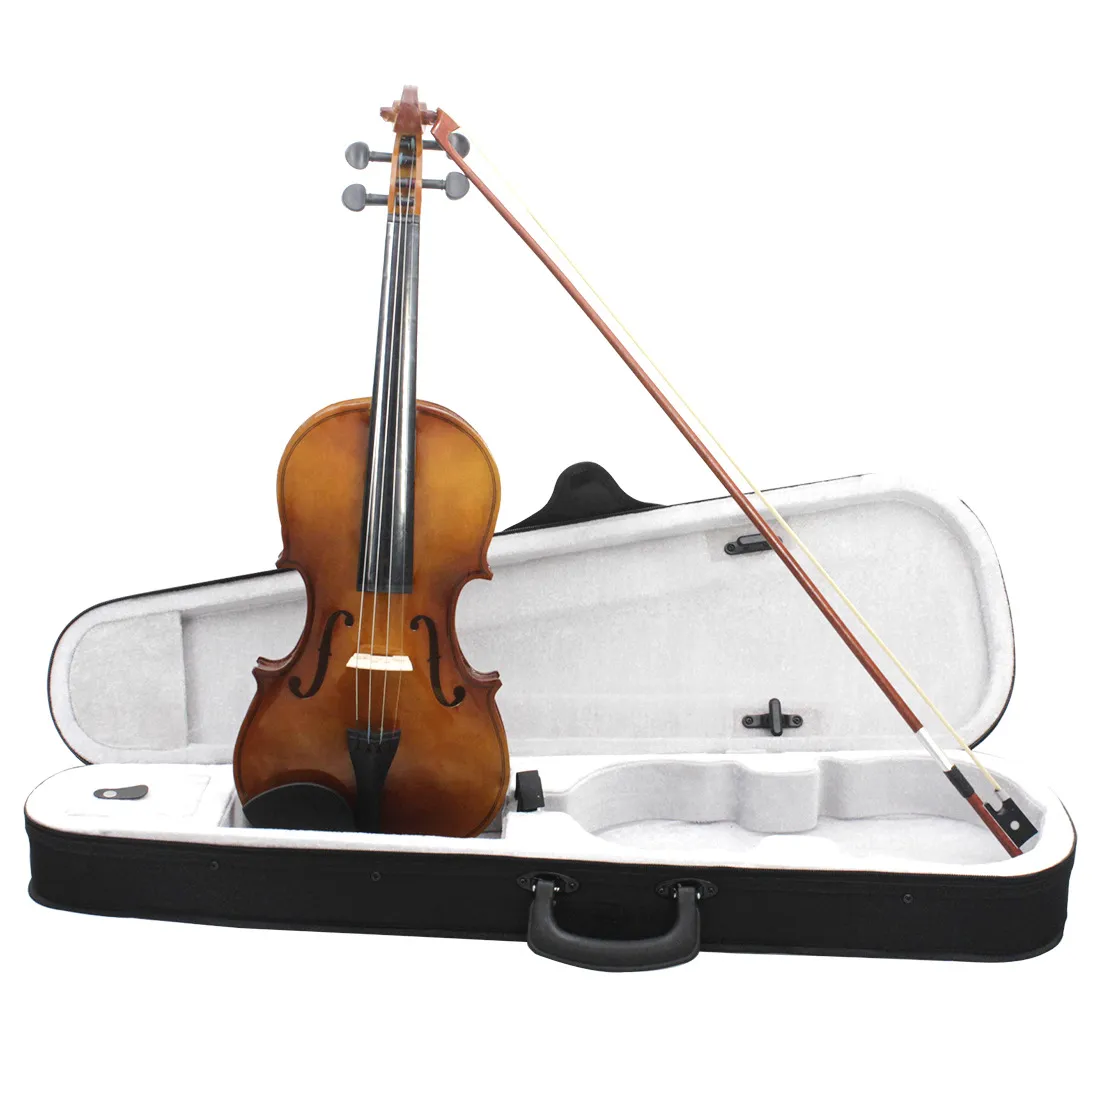 Violín retro de gama alta, violín de madera maciza 4/4, violín profesional de madera negra, instrumento de cuerda con caja oxford